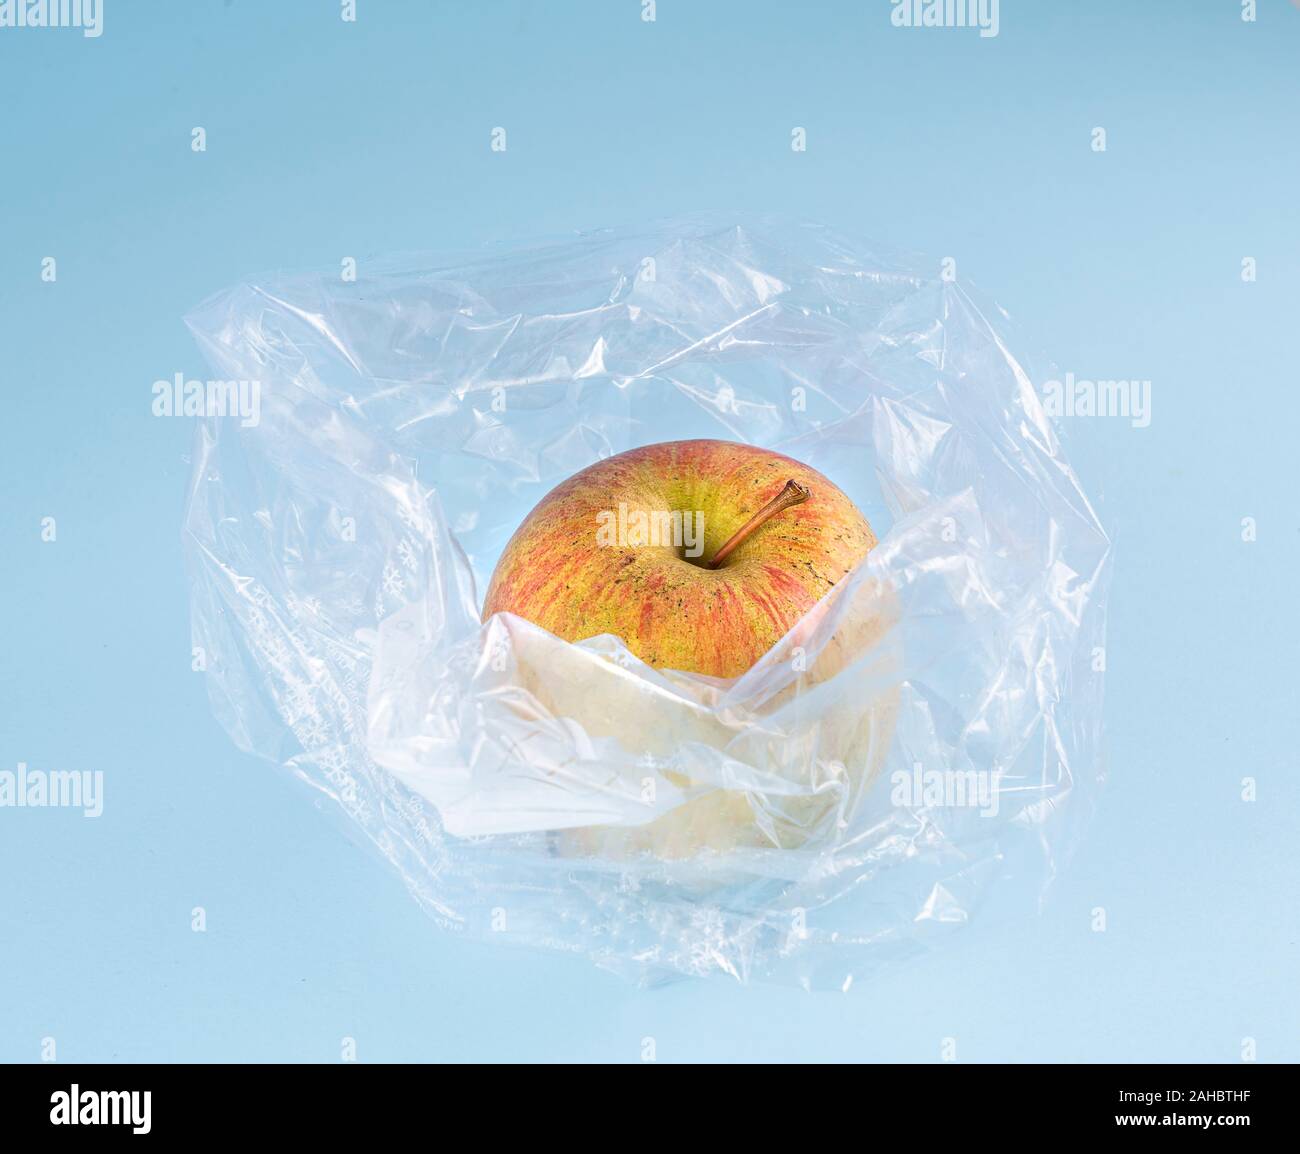 https://c8.alamy.com/comp/2AHBTHF/an-apple-in-a-plastic-bag-2AHBTHF.jpg